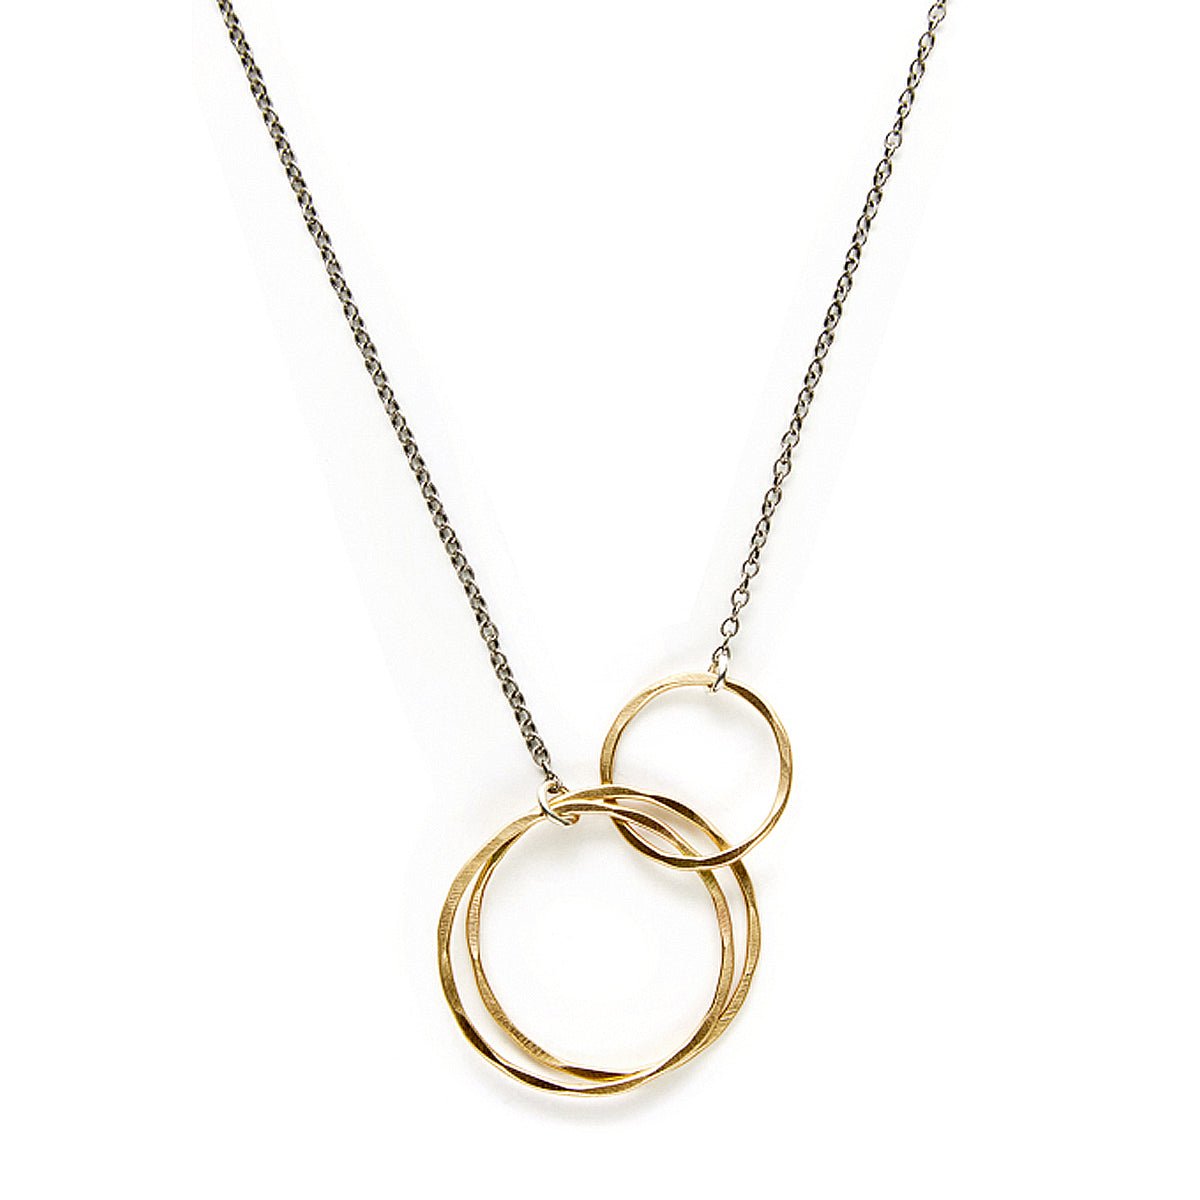 Interlocking Circles Necklace - Necklaces